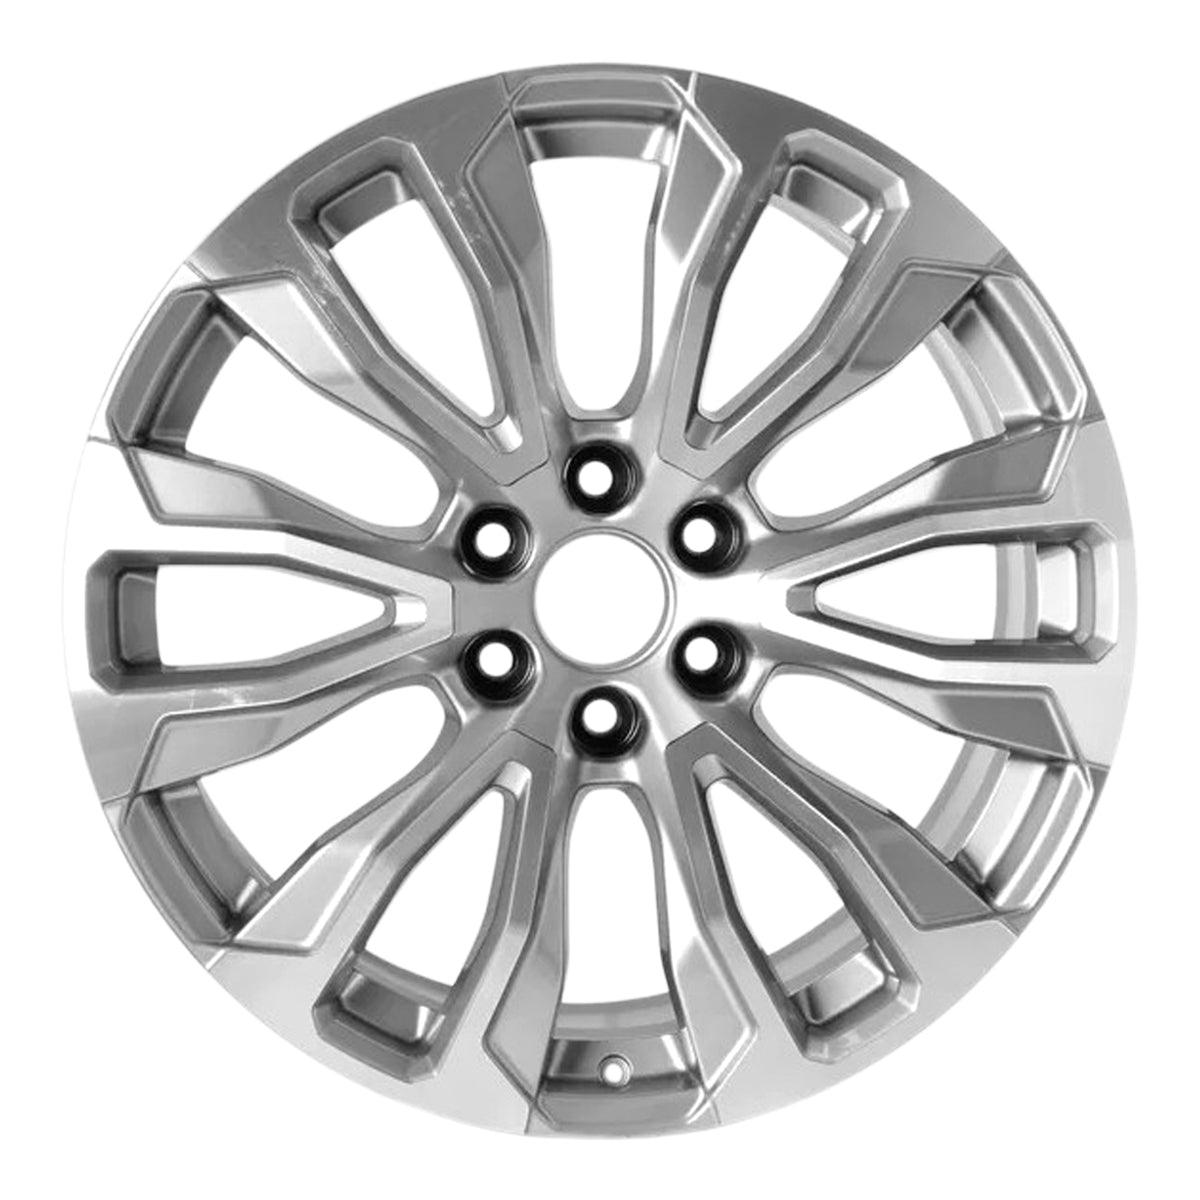 2021 GMC Yukon XL 22" OEM Wheel Rim W97000MS